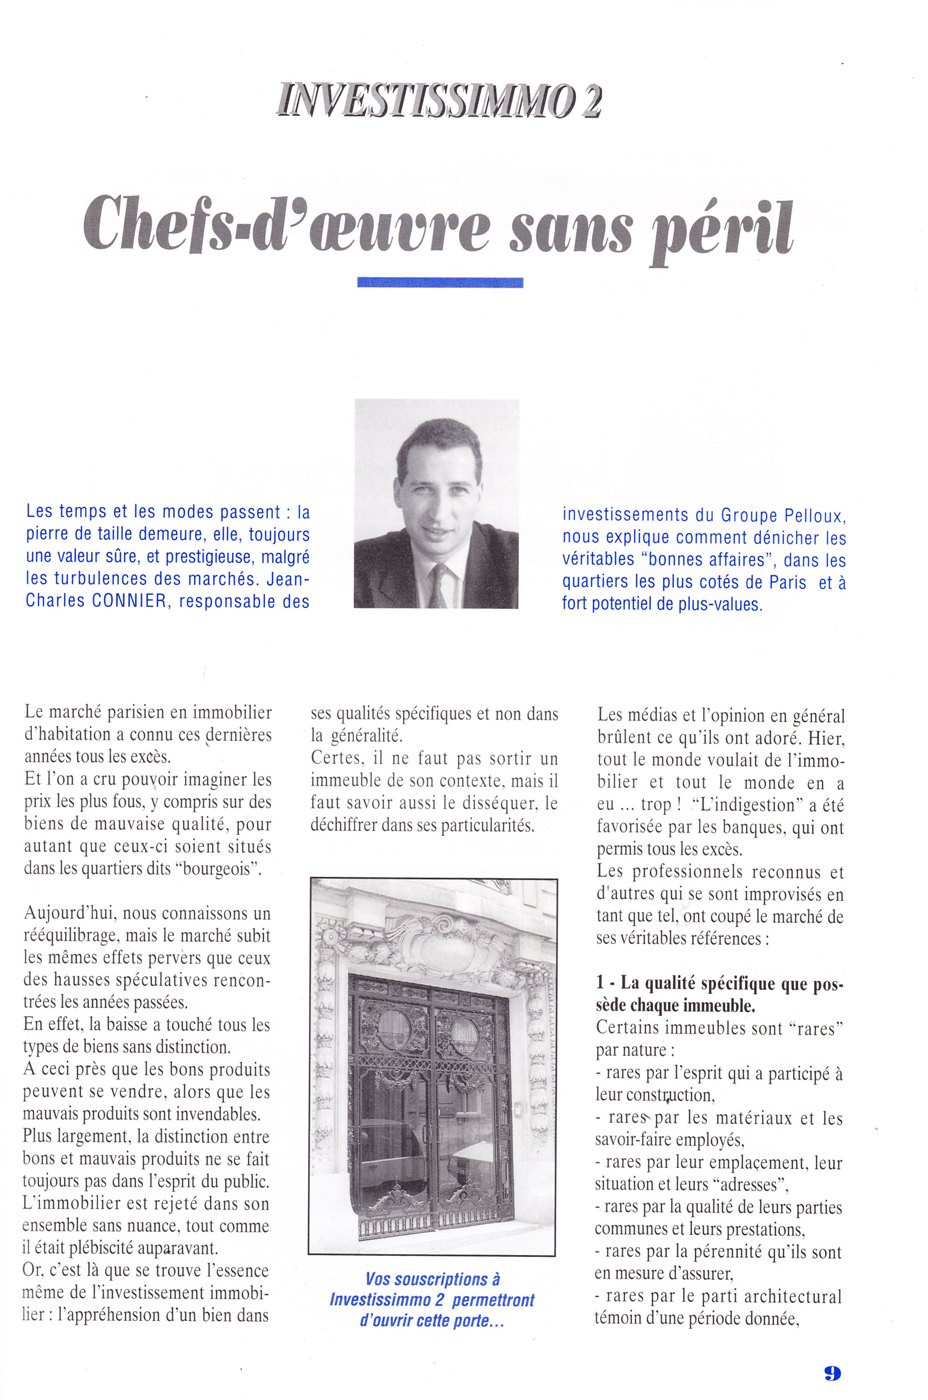 Article de Jean-Charles CONNIER Page 9 du Magazine des associés du GROUPE PELLOUX n° 6 de mai 1993